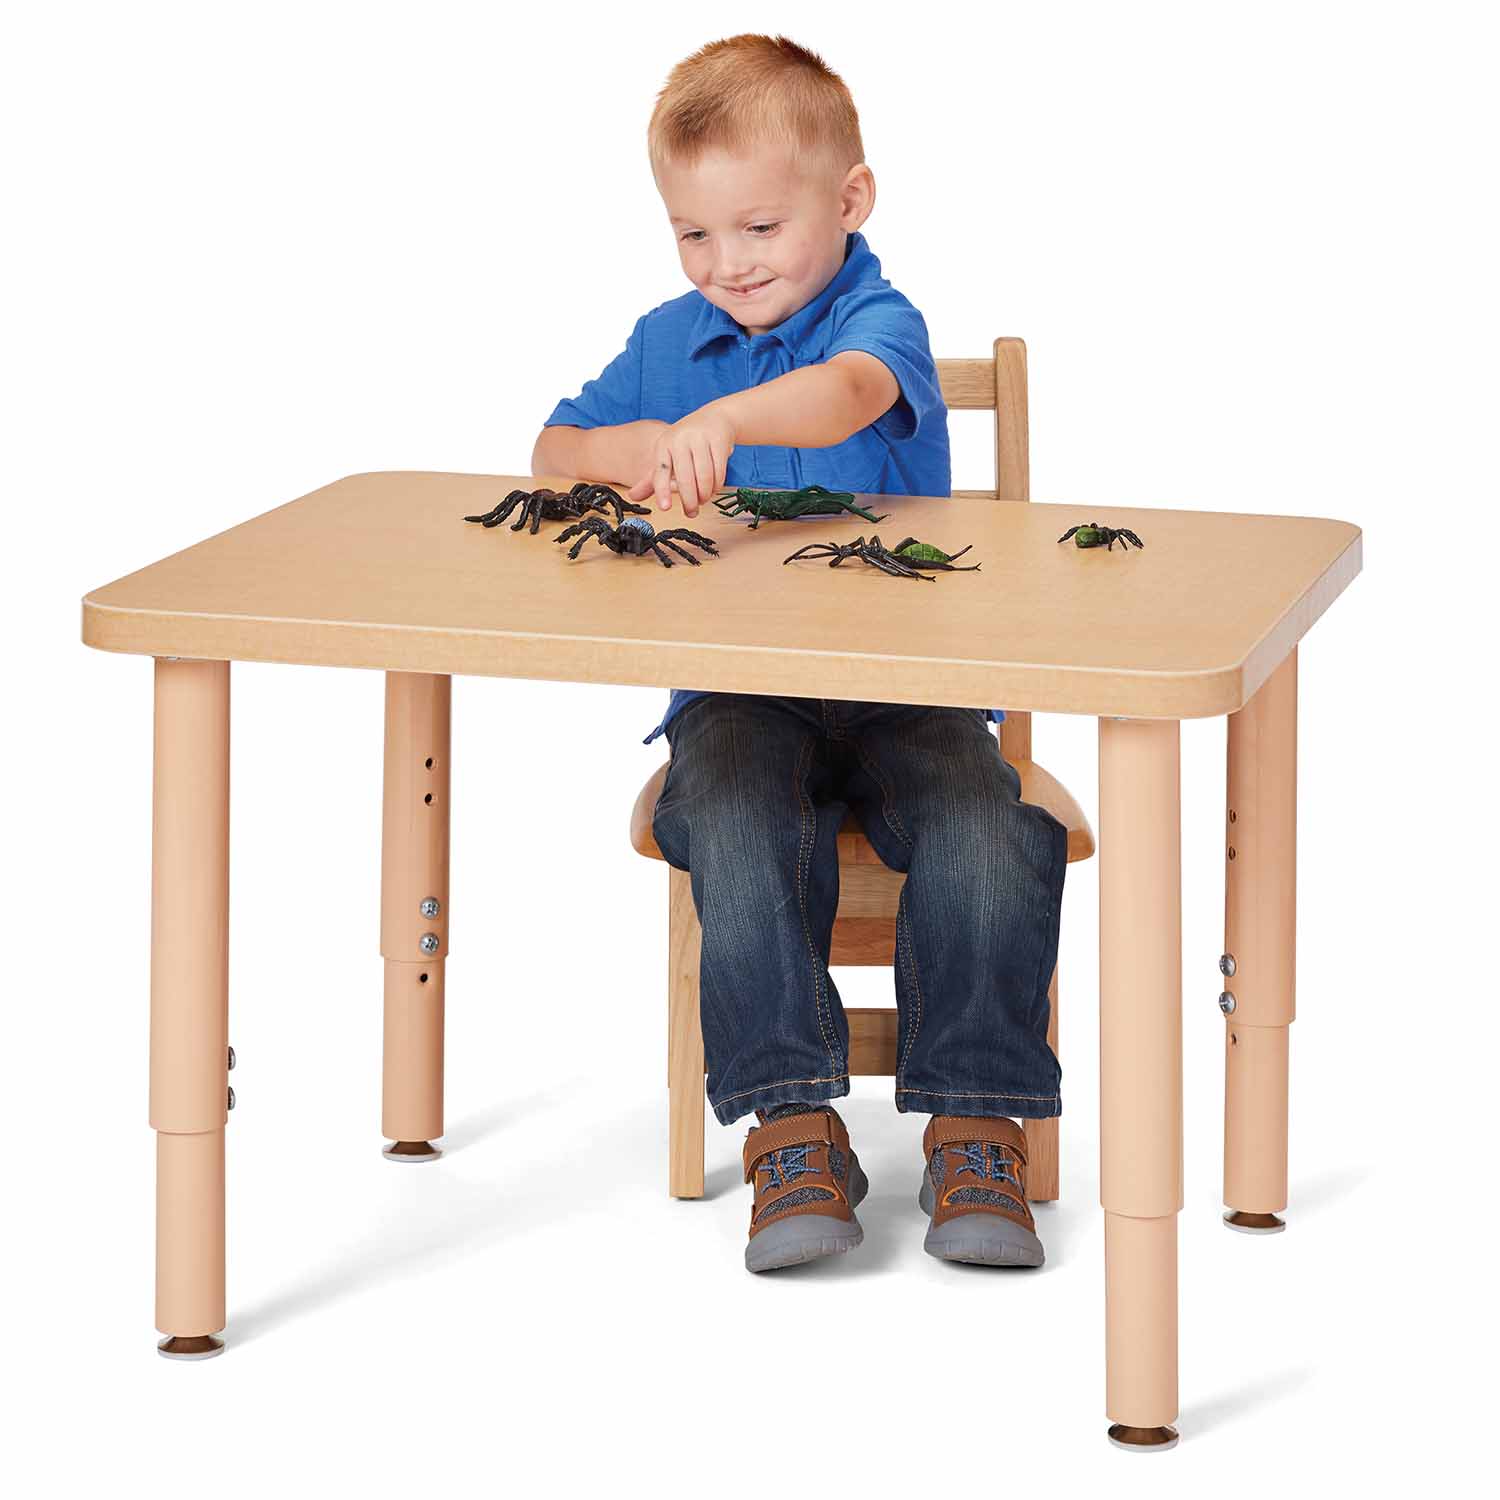 Multi-Purpose Adjustable Tables